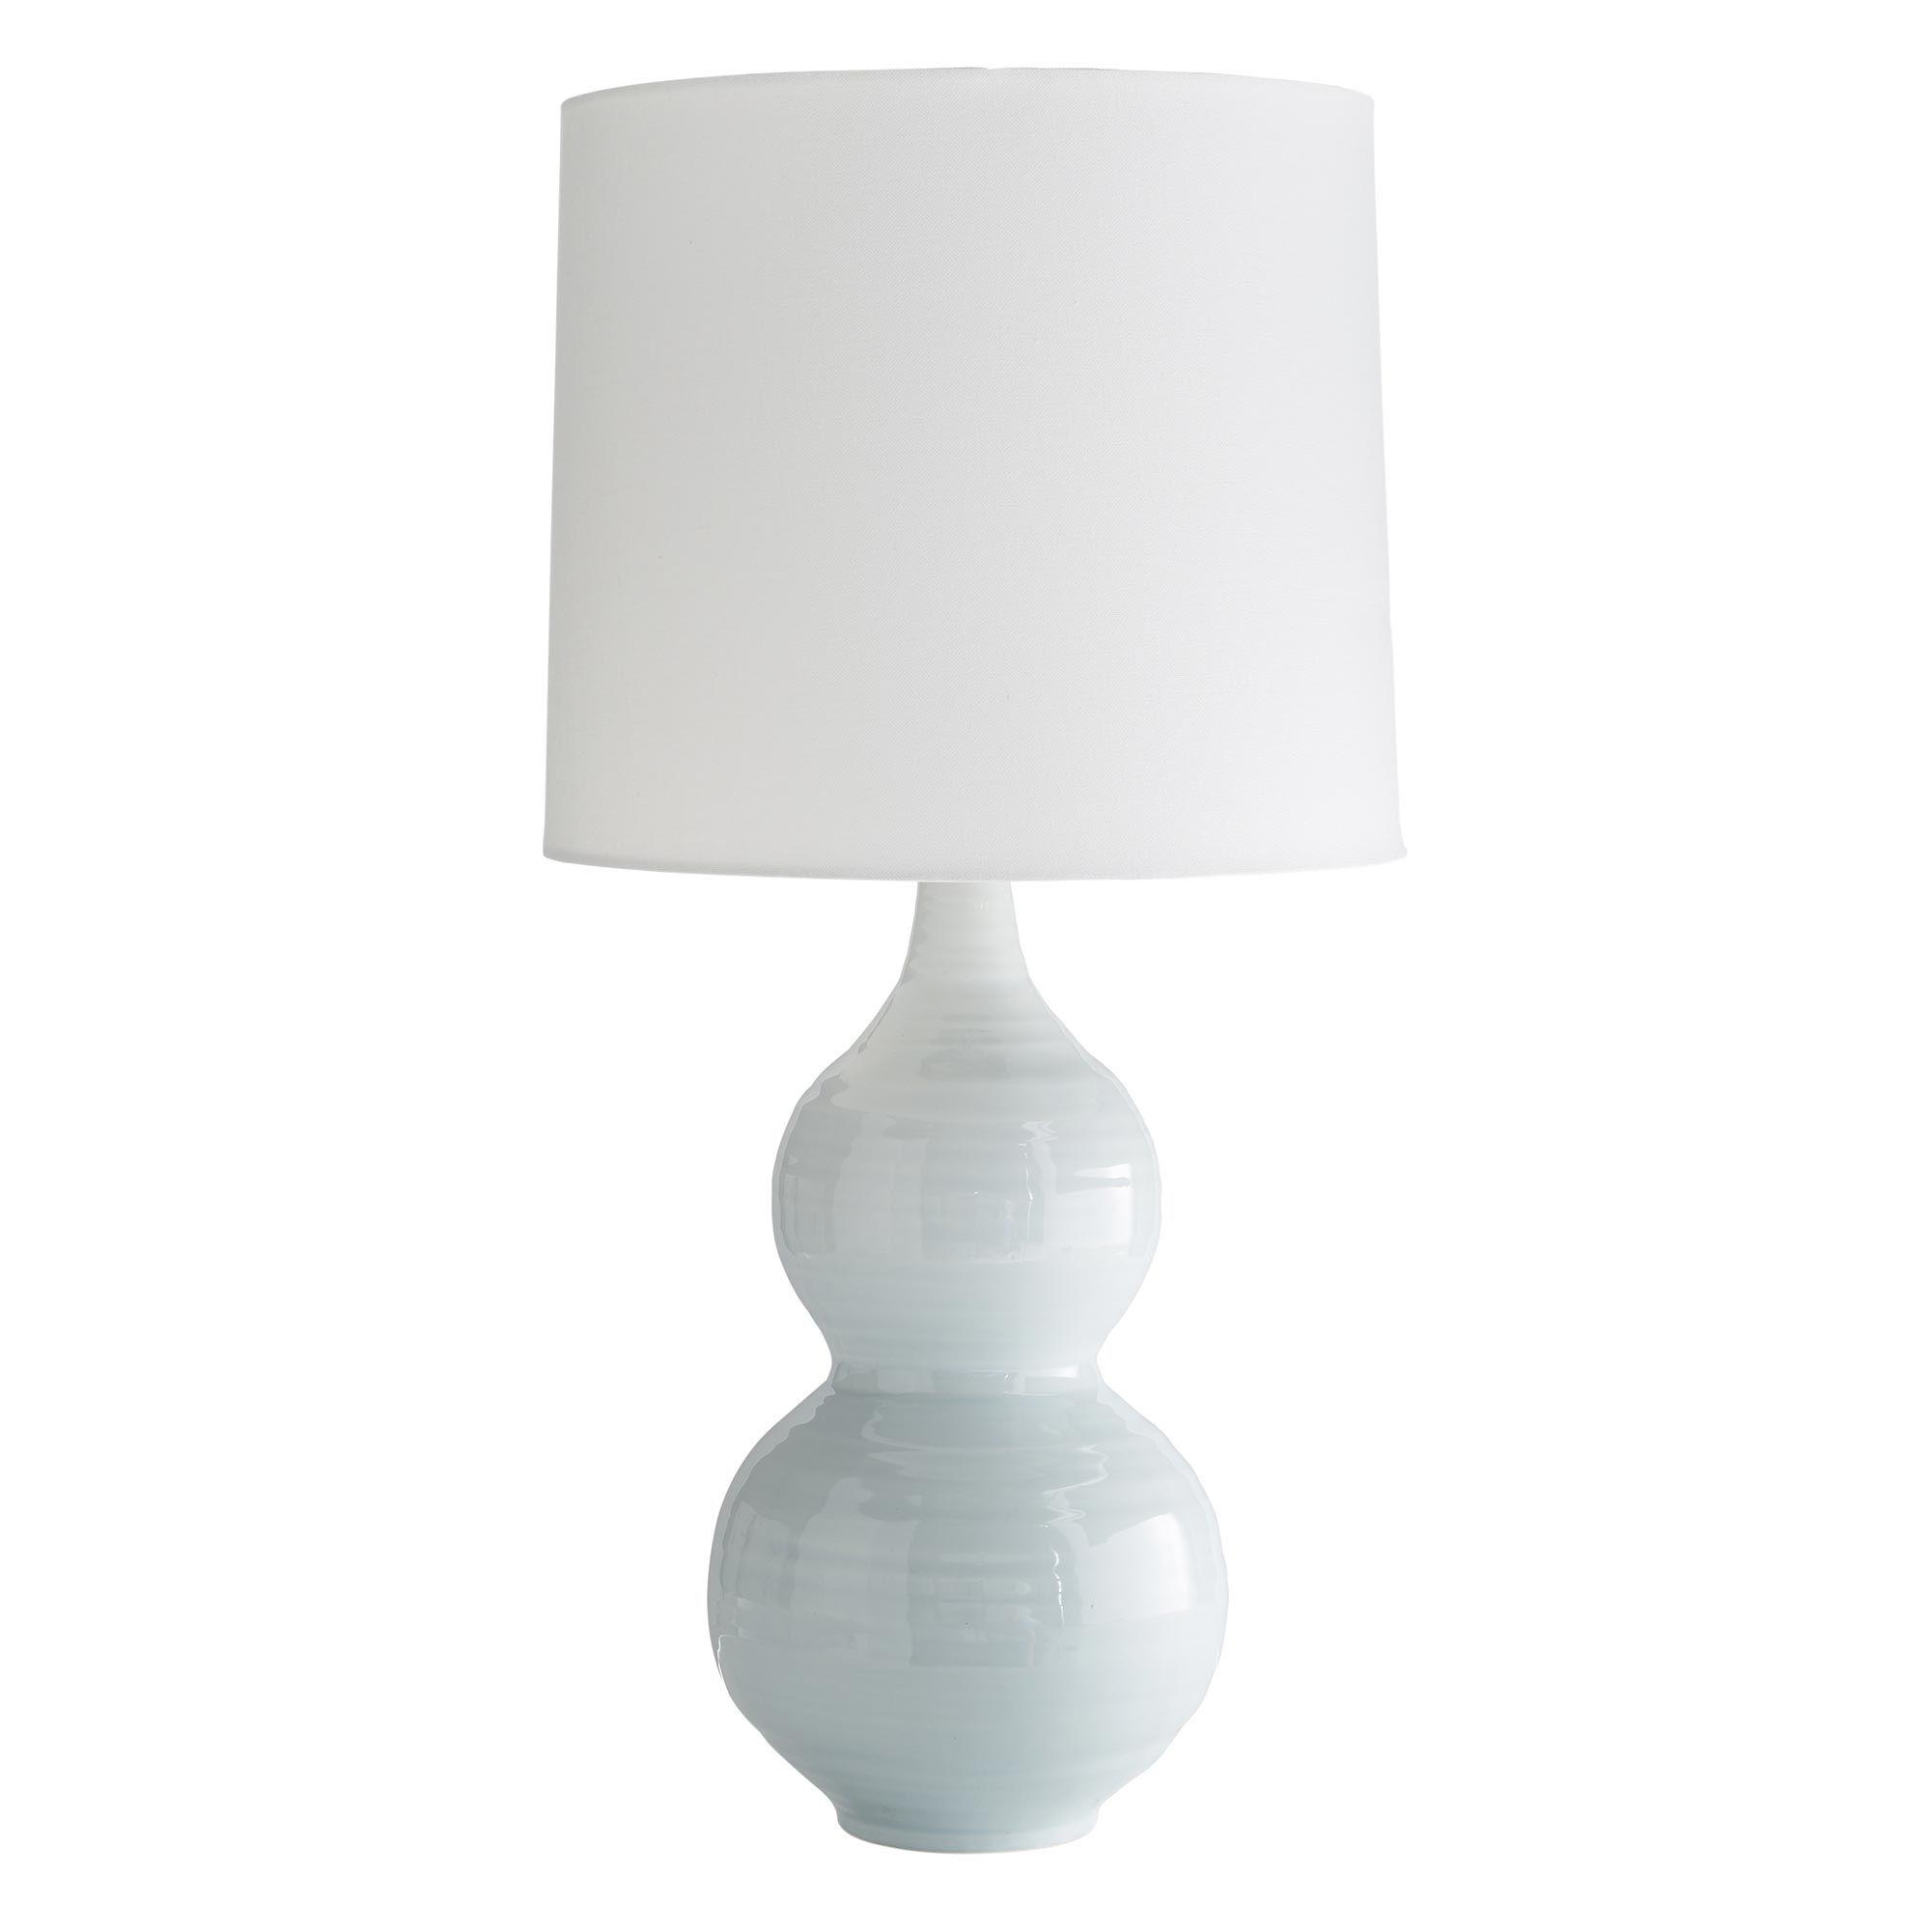 Купить Настольная лампа Lacey Lamp в интернет-магазине roooms.ru